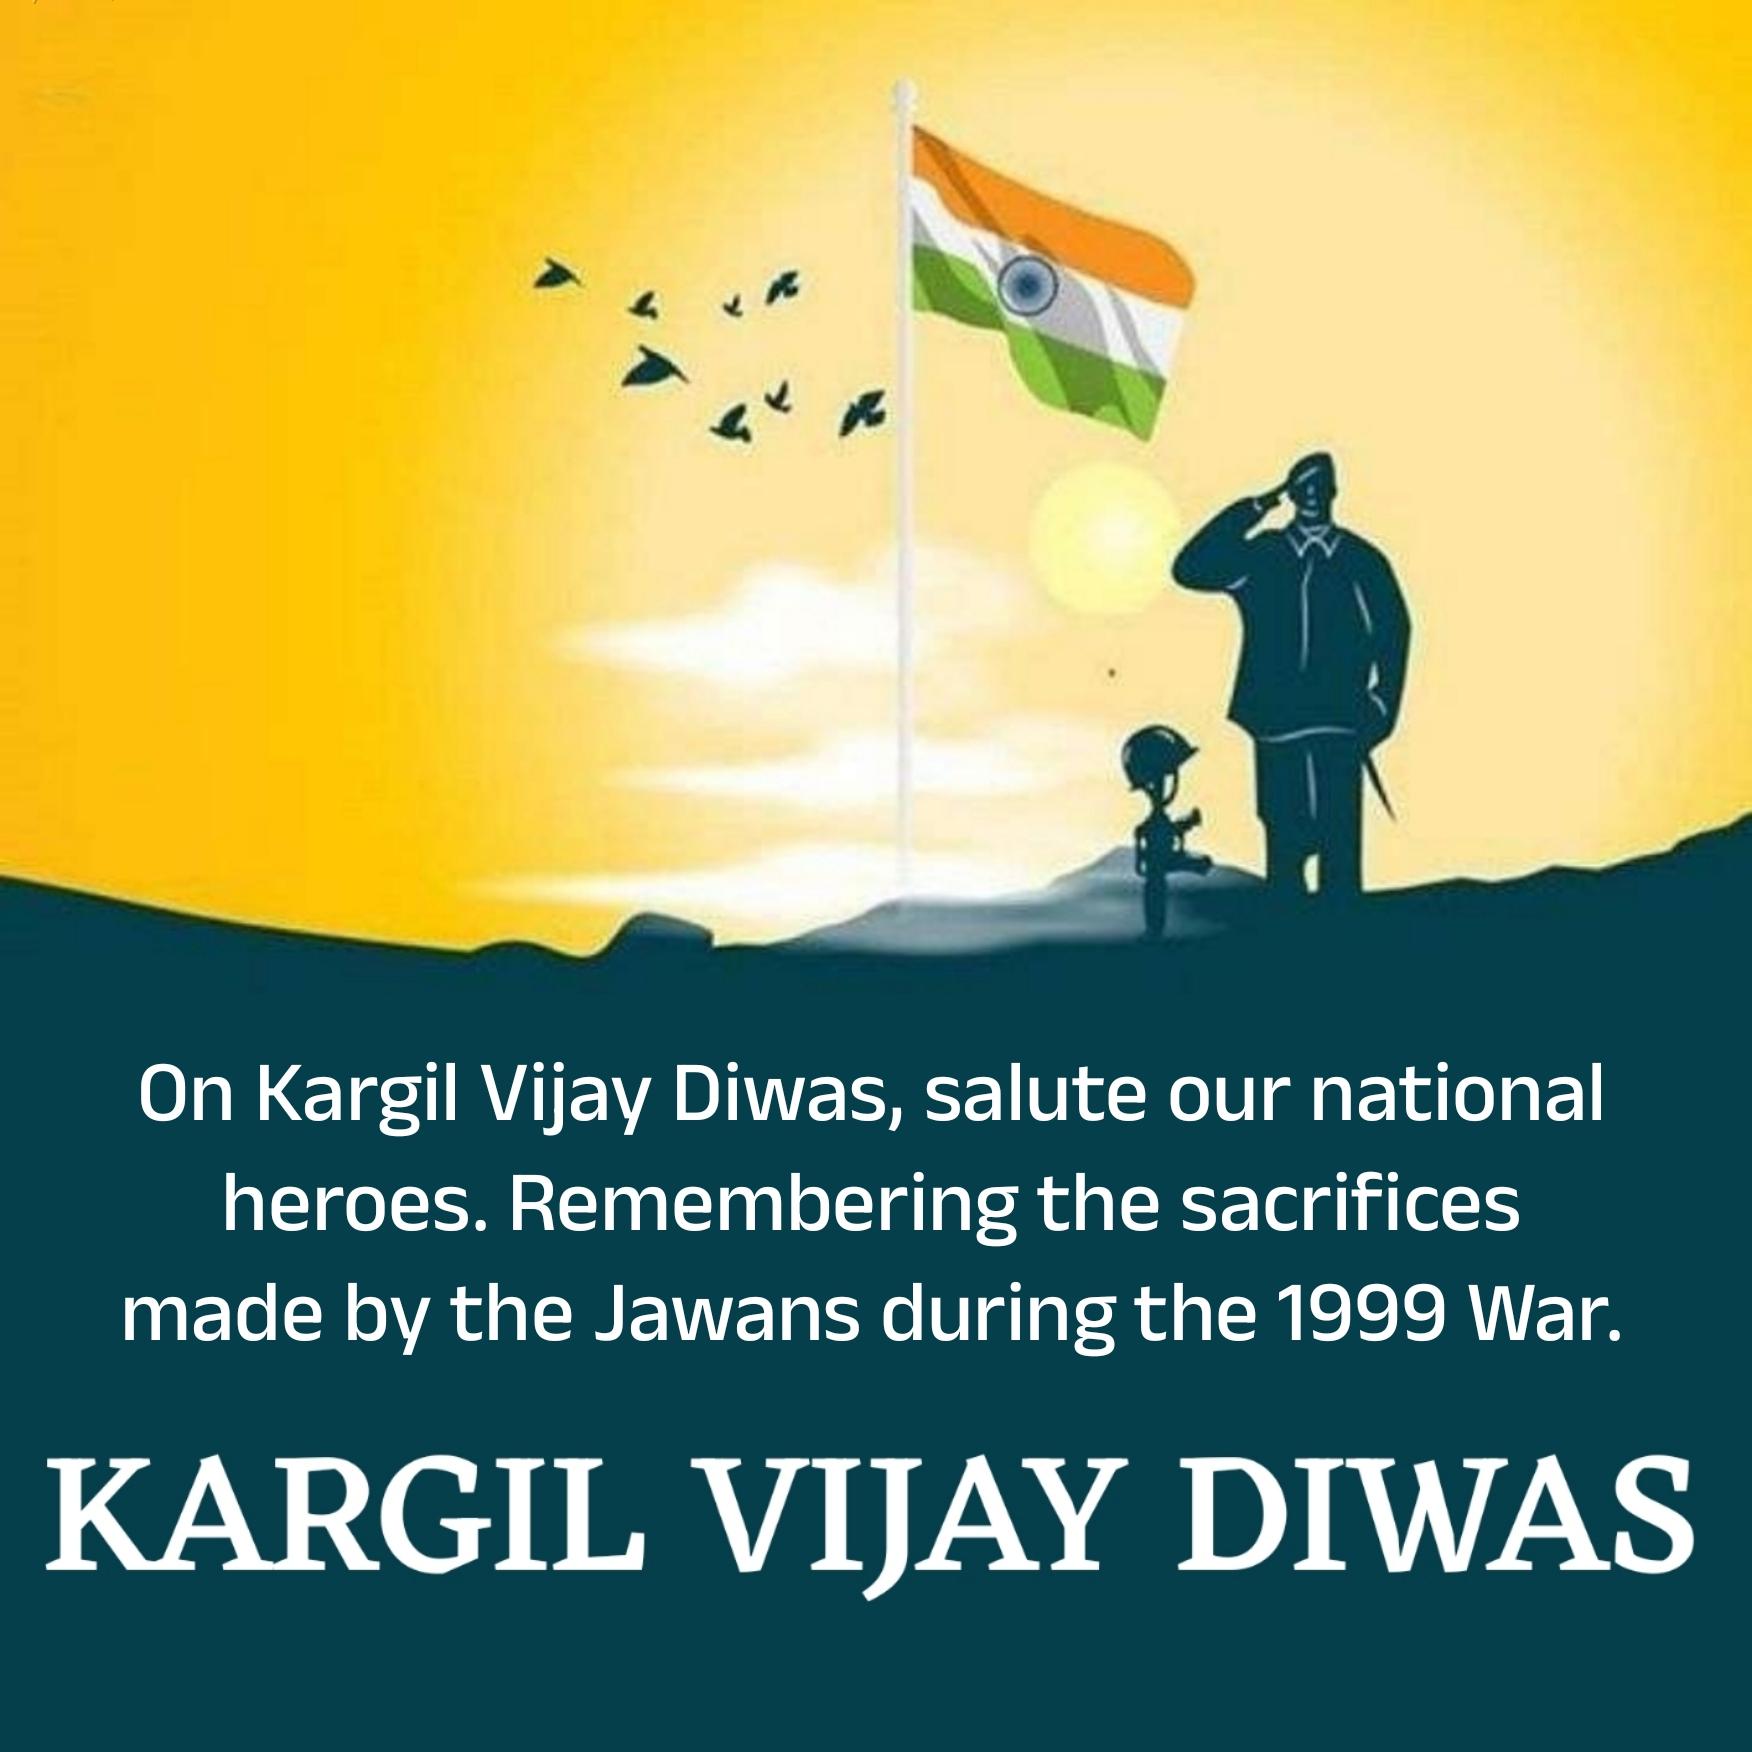 On Kargil Vijay Diwas salute our national heroes